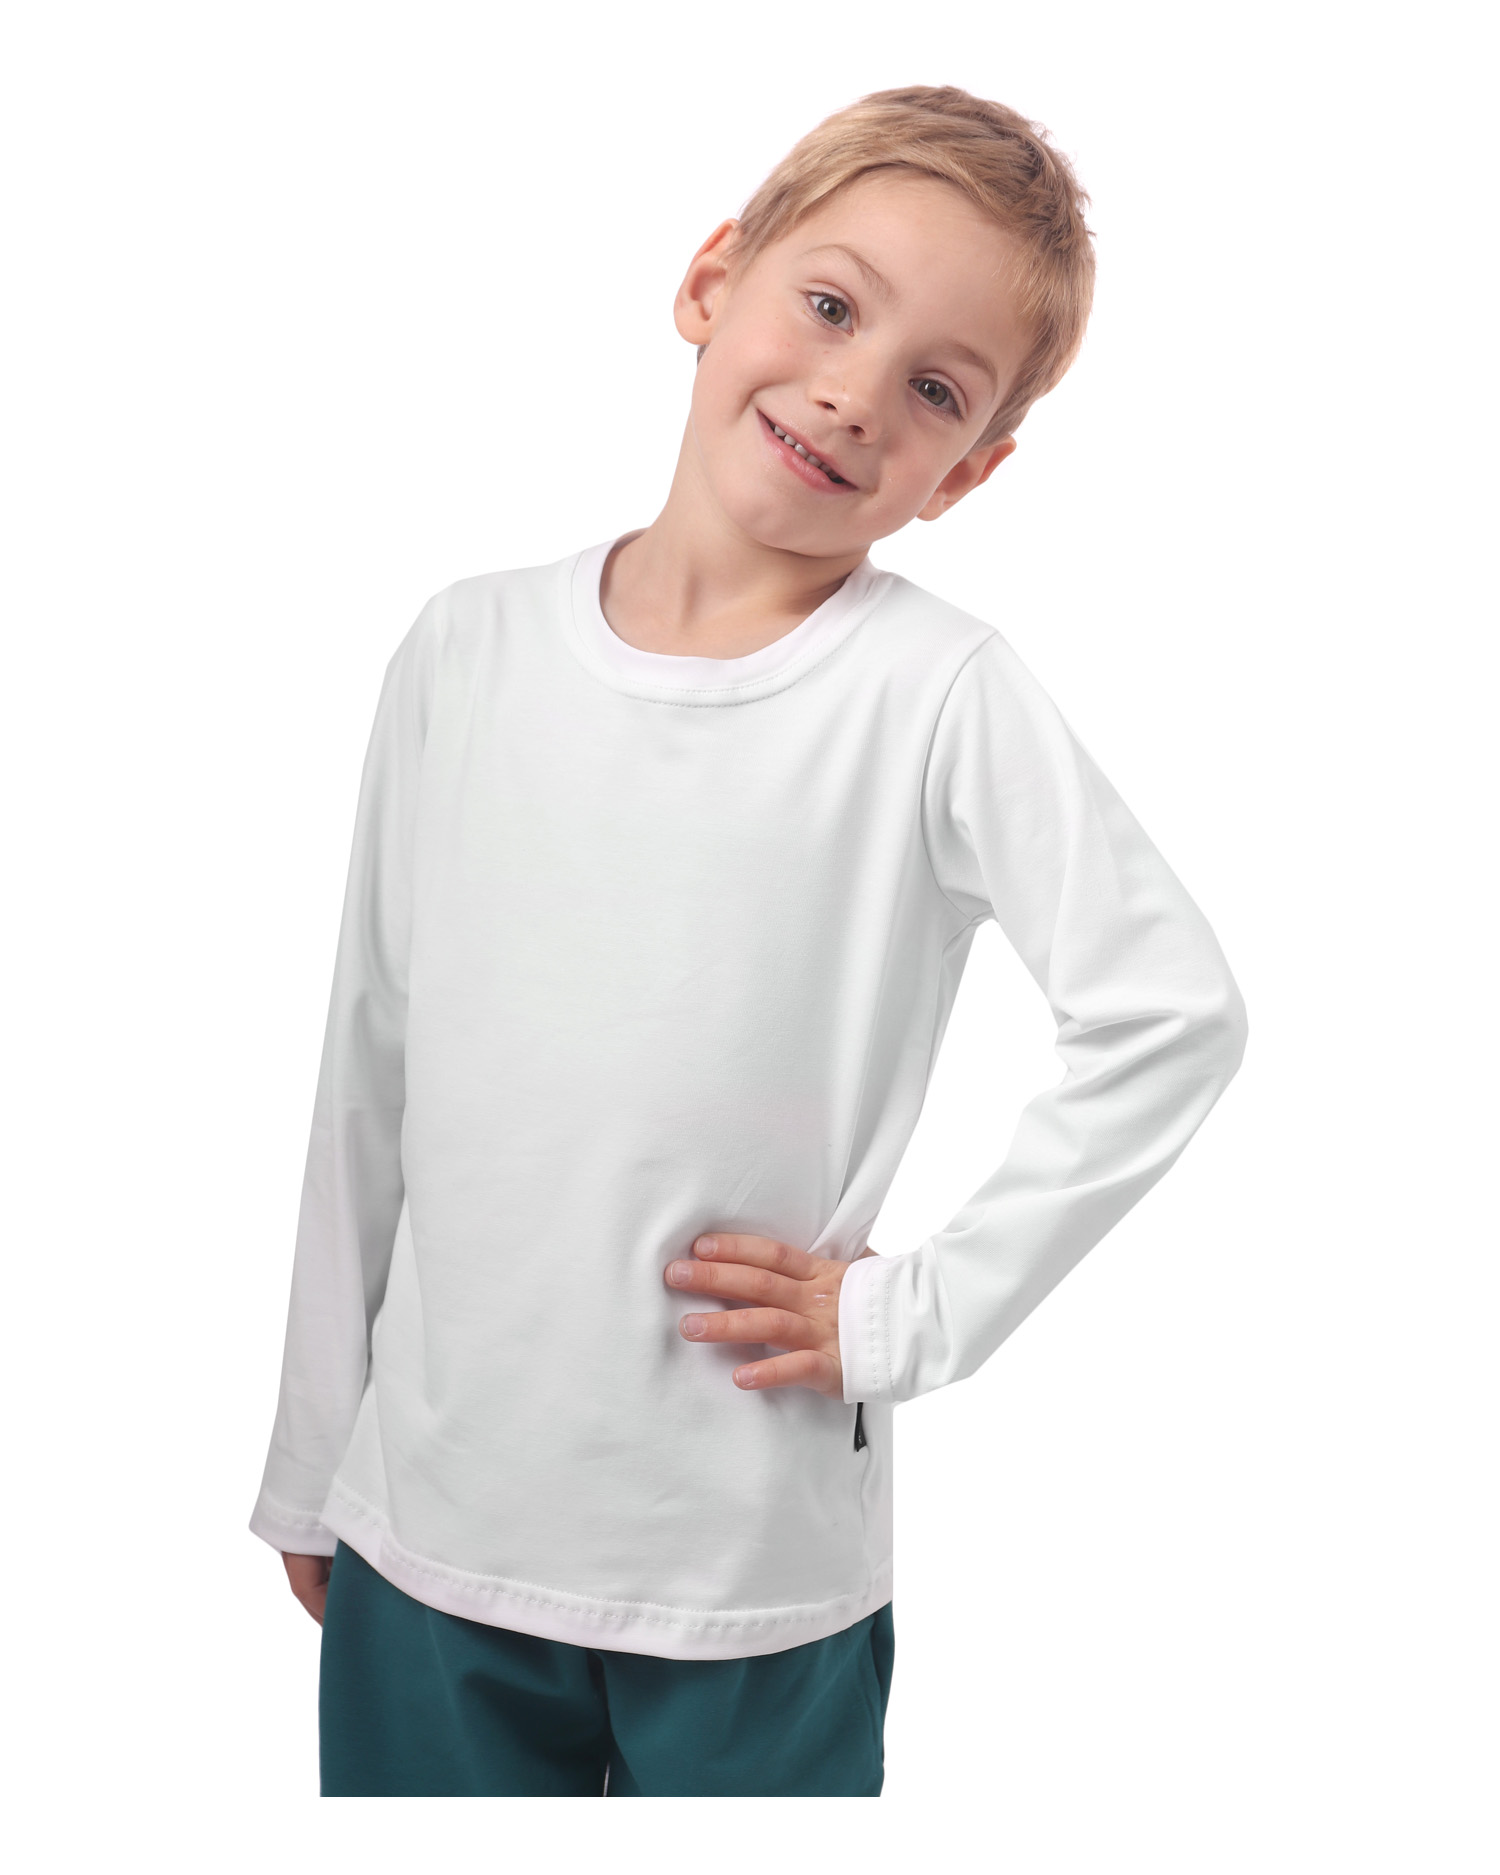 Detské tričko, dlhý rukáv, biele